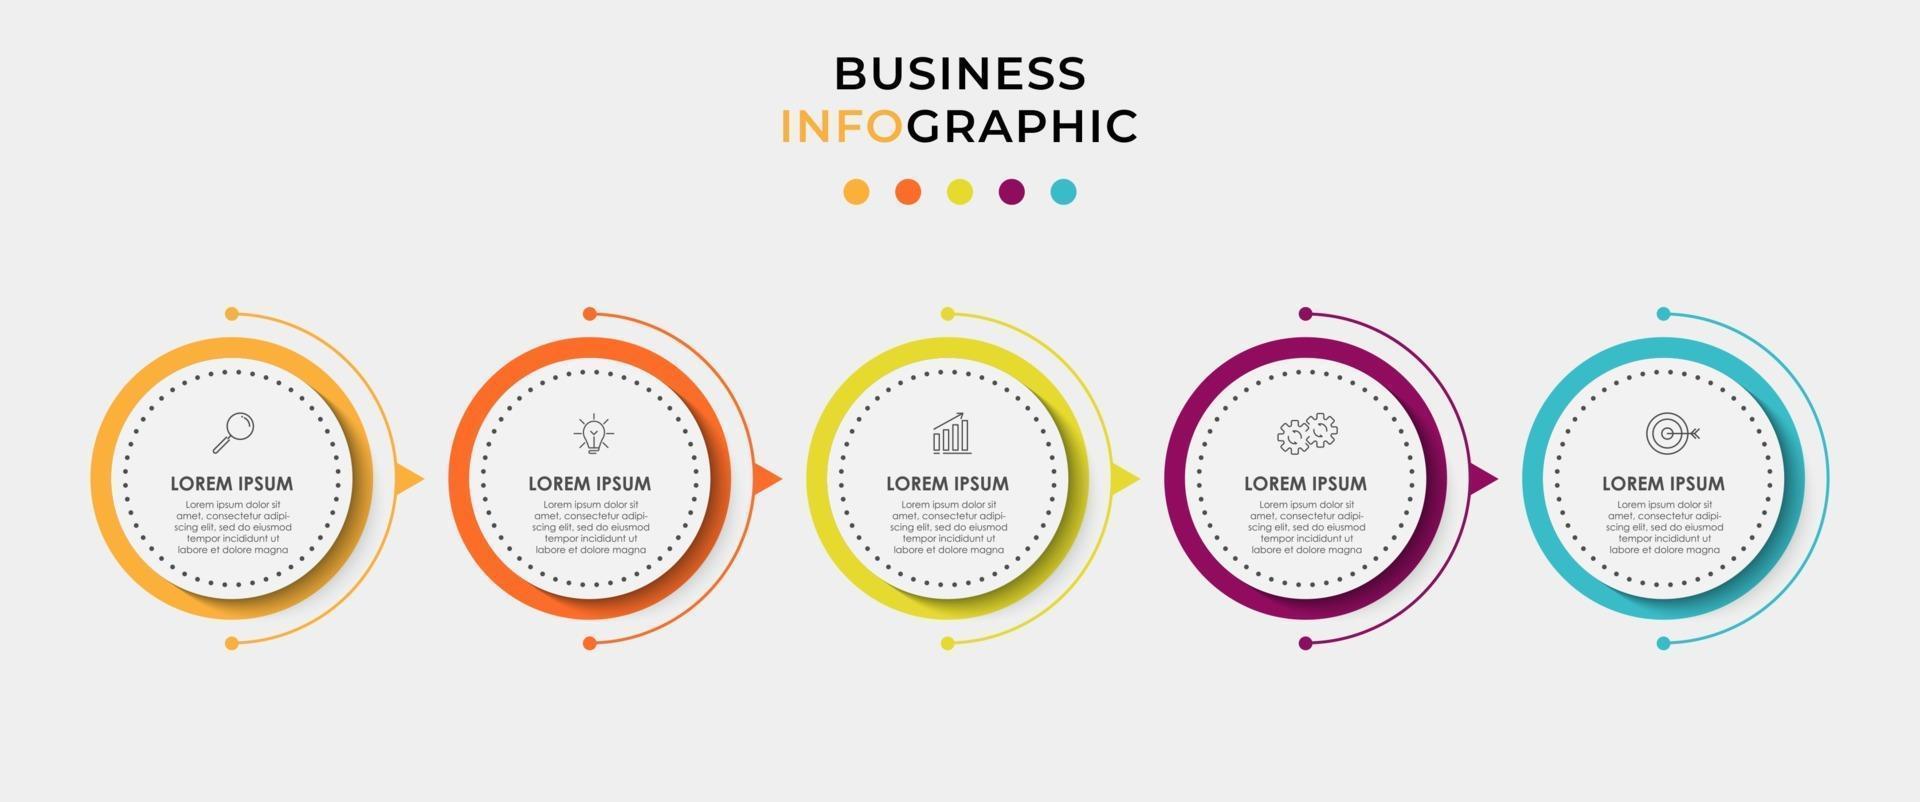 El vector de diseño de infografías y los iconos de marketing se pueden utilizar para el diseño de flujo de trabajo, diagrama, informe anual, diseño web. concepto de negocio con 5 opciones, pasos o procesos.